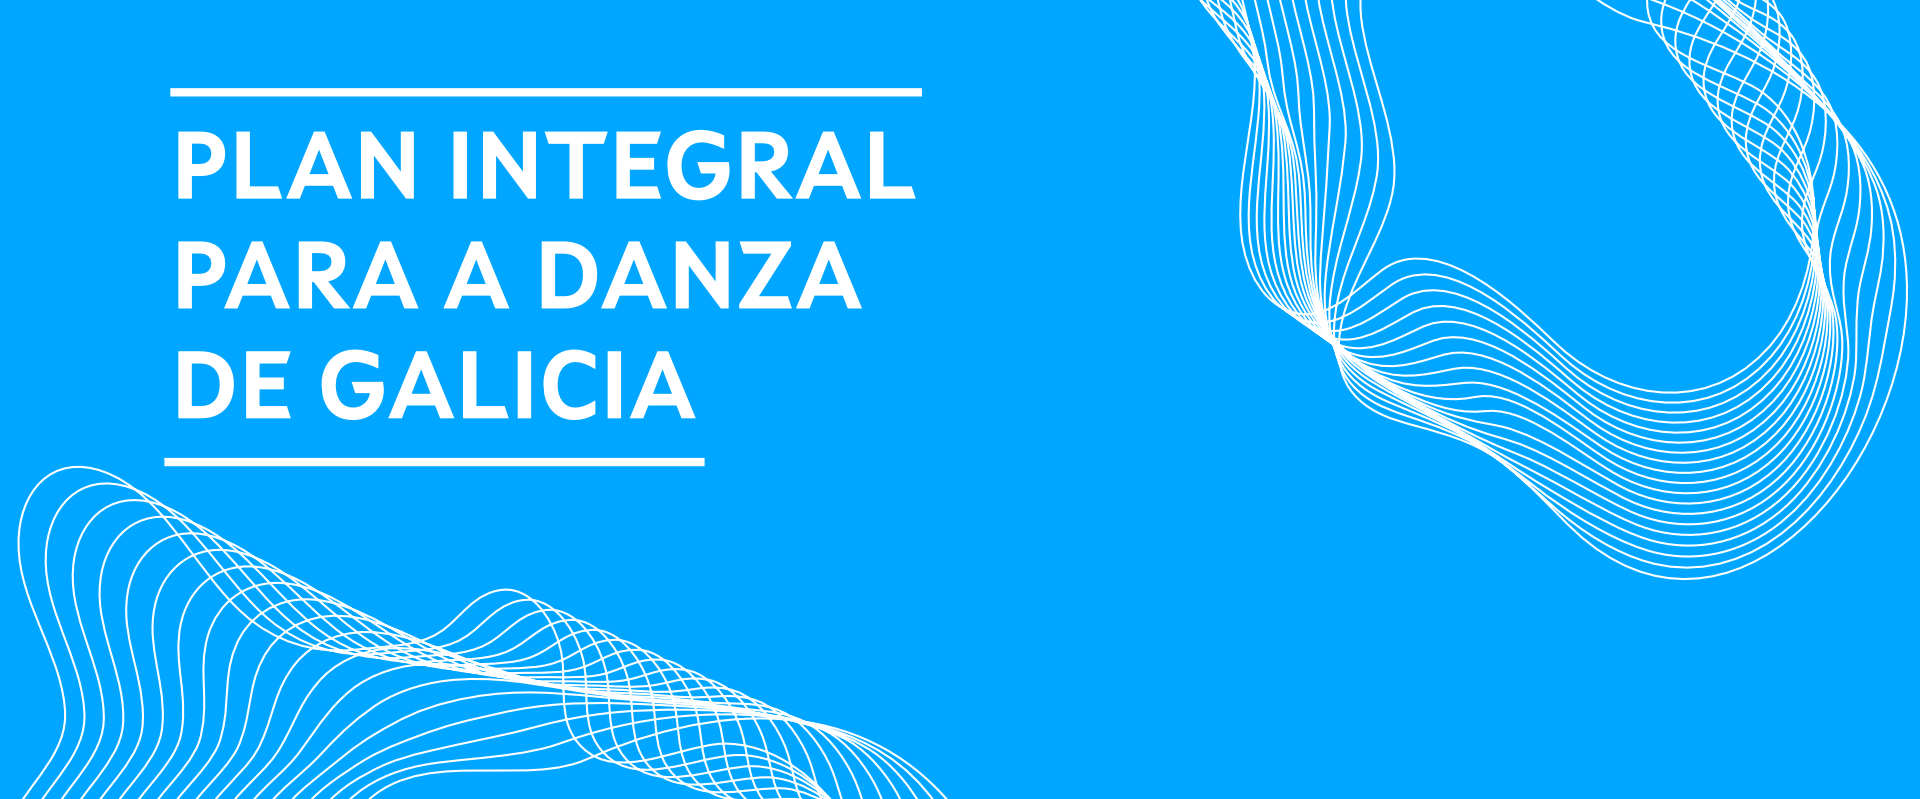 Banner del Plan Integral para la Danza de Galicia